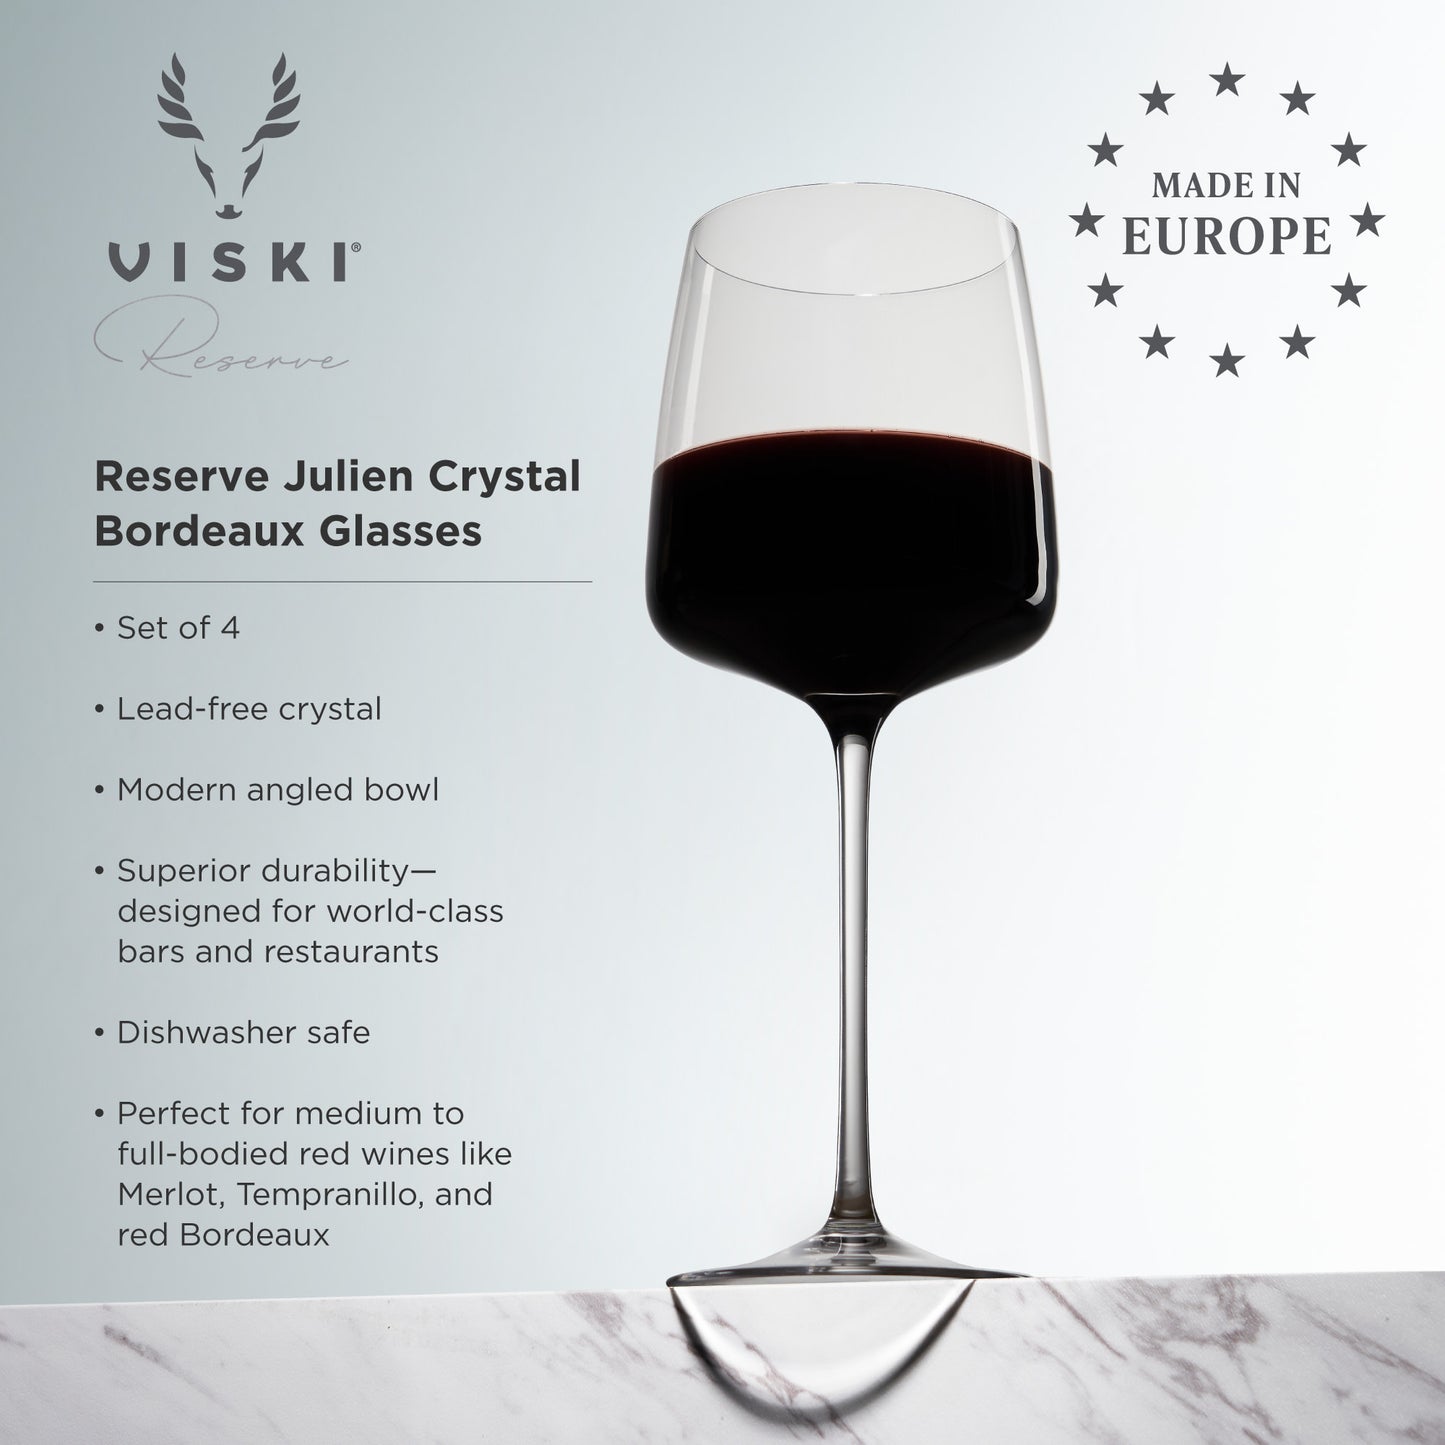 Reserve Julien Crystal Bordeaux Glasses (set of 4)